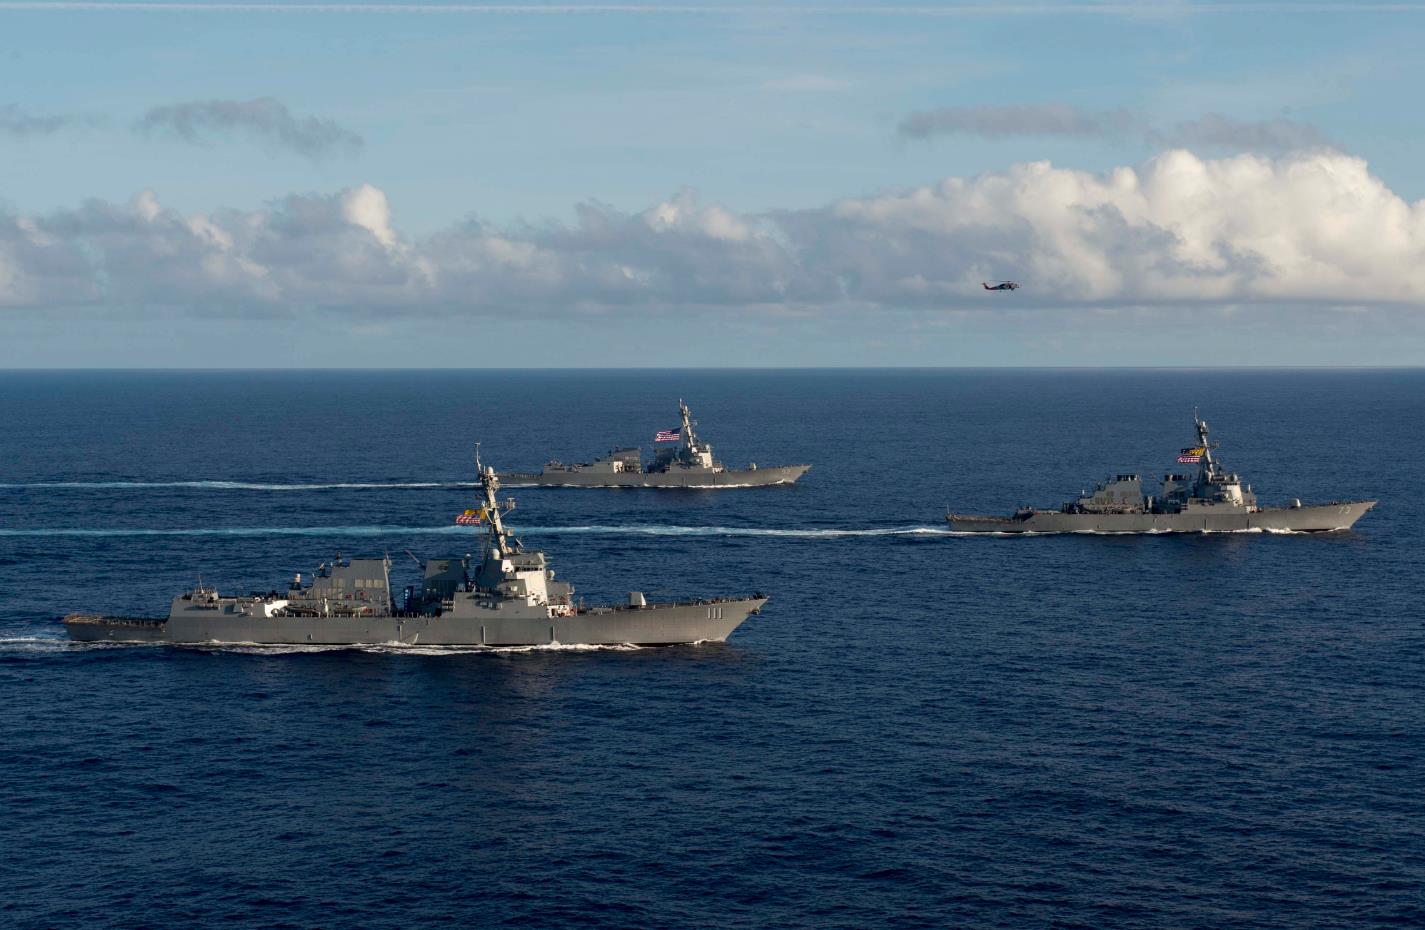 Kapal-kapal US Navy yang tergabung dalam Surface Action Group (SAG). Sumber: Navaltoday.com